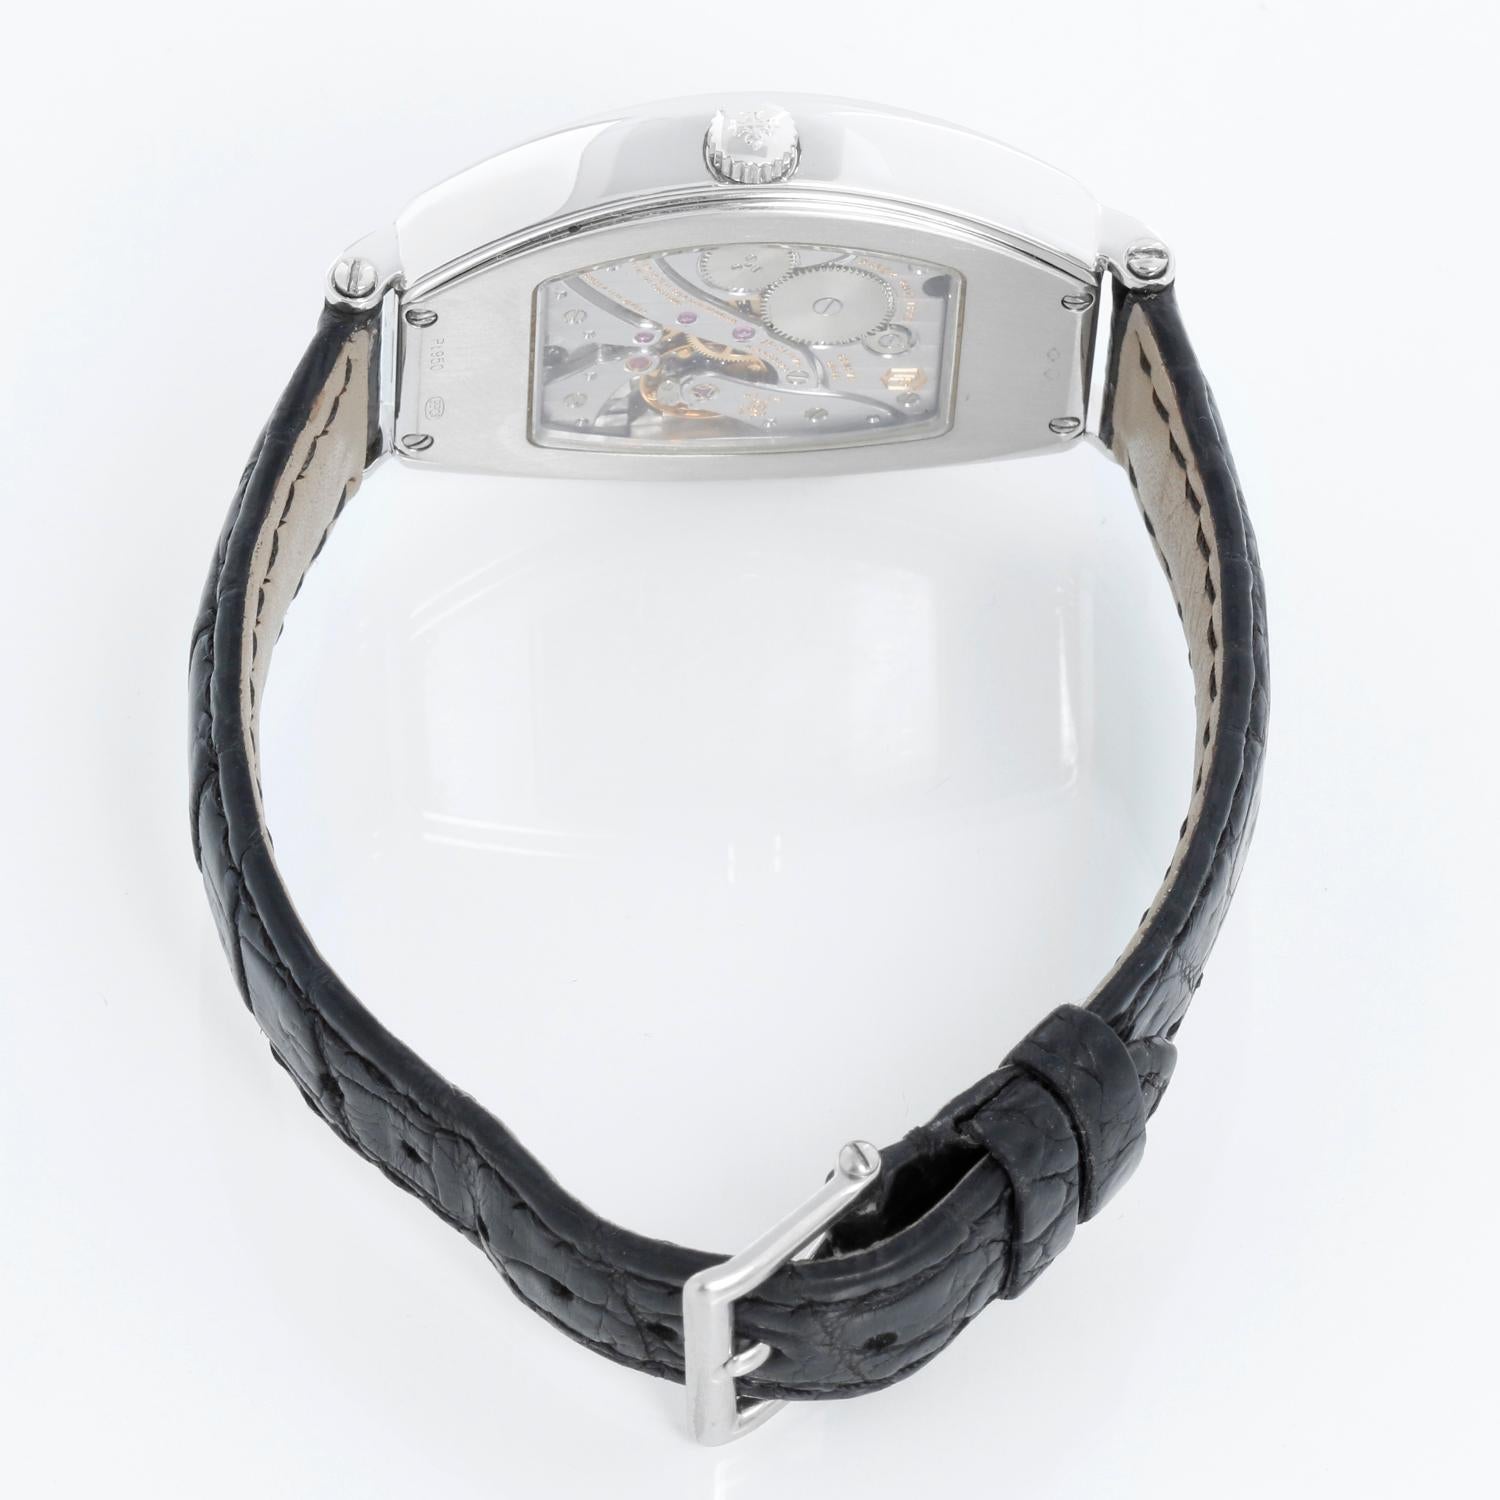 Patek Philippe Chronometro Gondolo Platinum Men's Watch  5098 P (or 5098P) 1